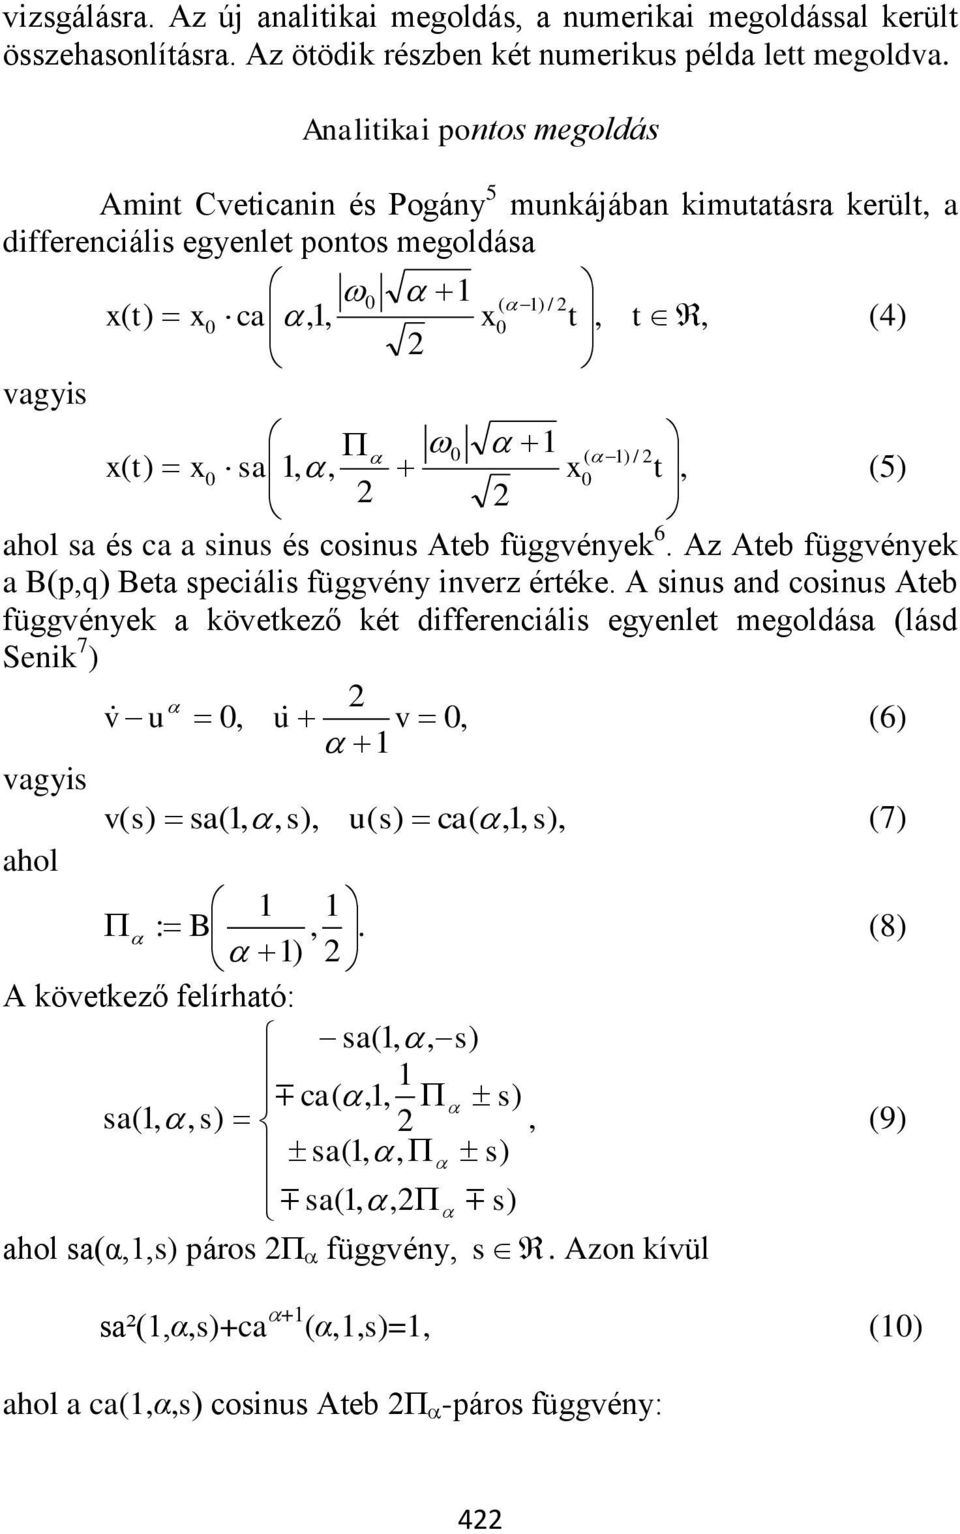 ca a sinus és cosinus Ateb függvények 6. Az Ateb függvények a Bpq Beta speciális függvény inverz értéke.